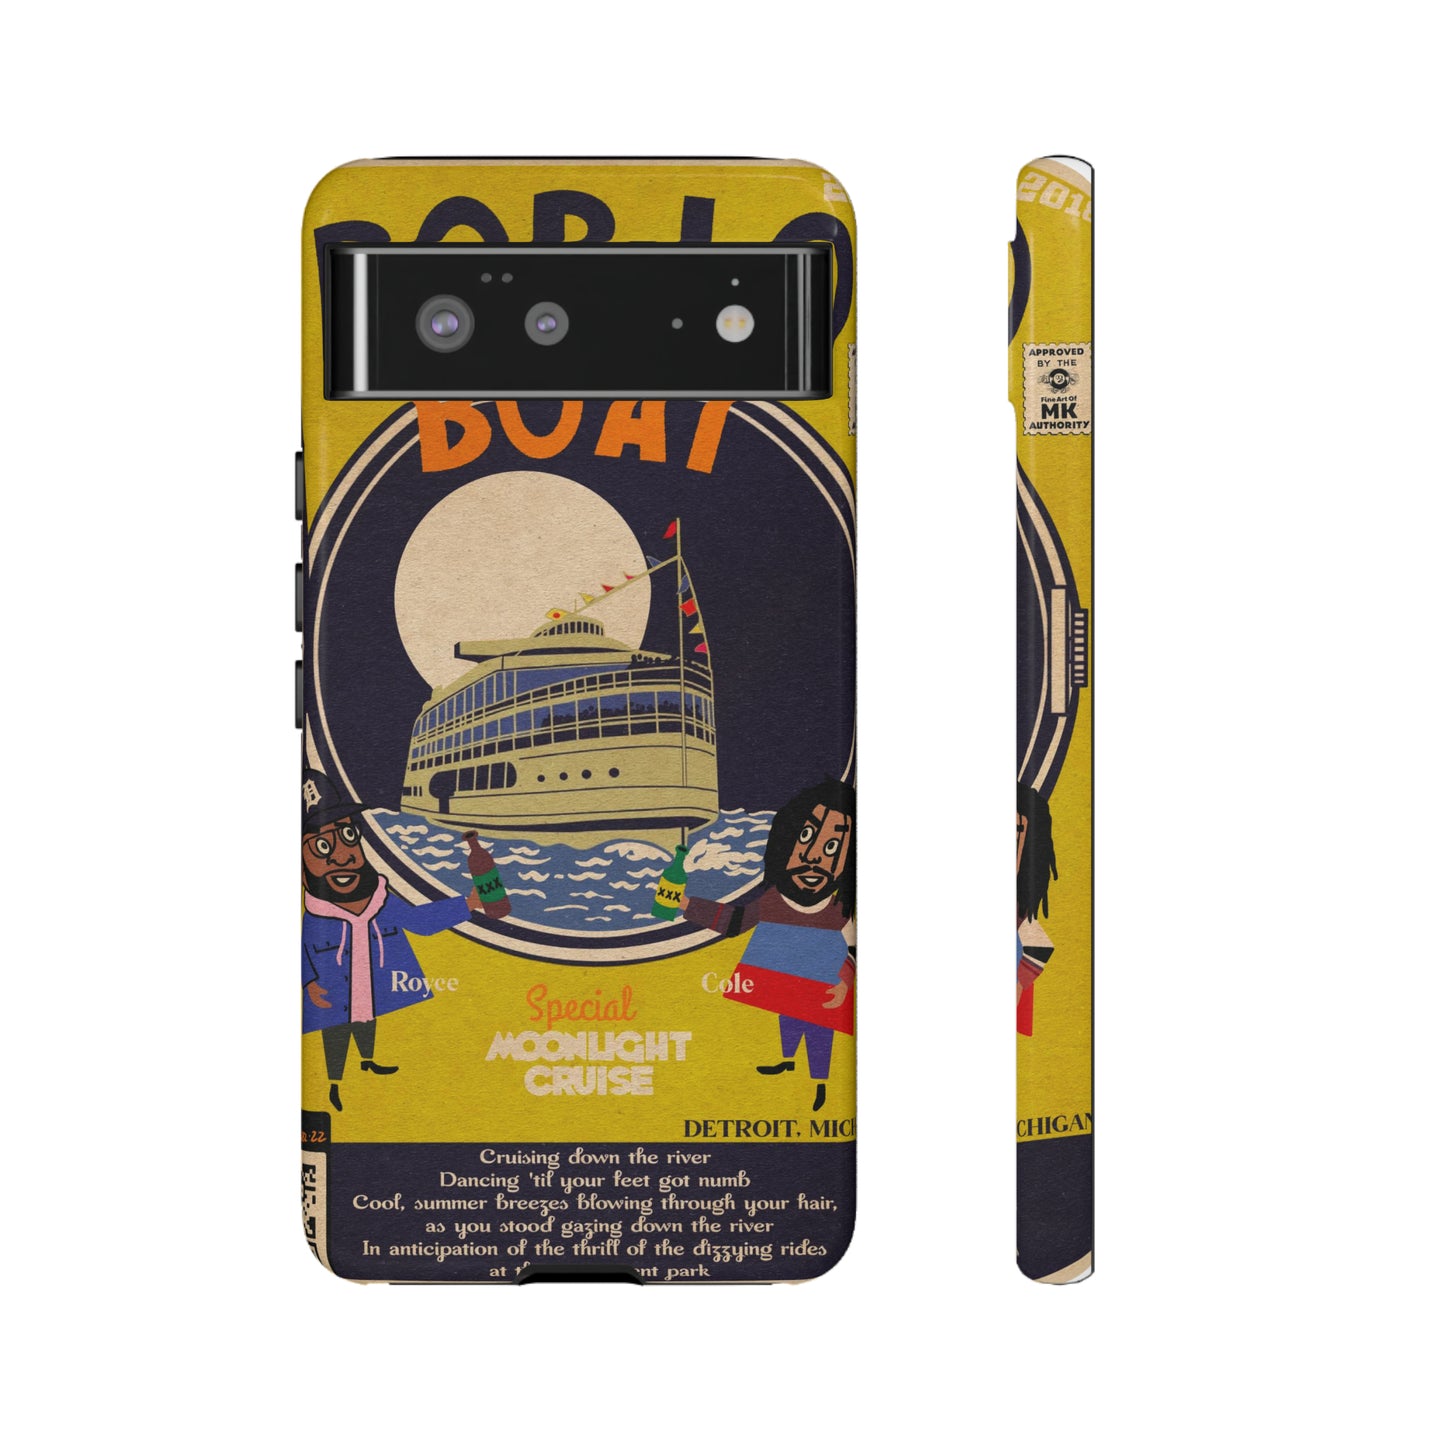 Royce Da 5’9 & J. Cole - Boblo Boat - Tough Phone Cases